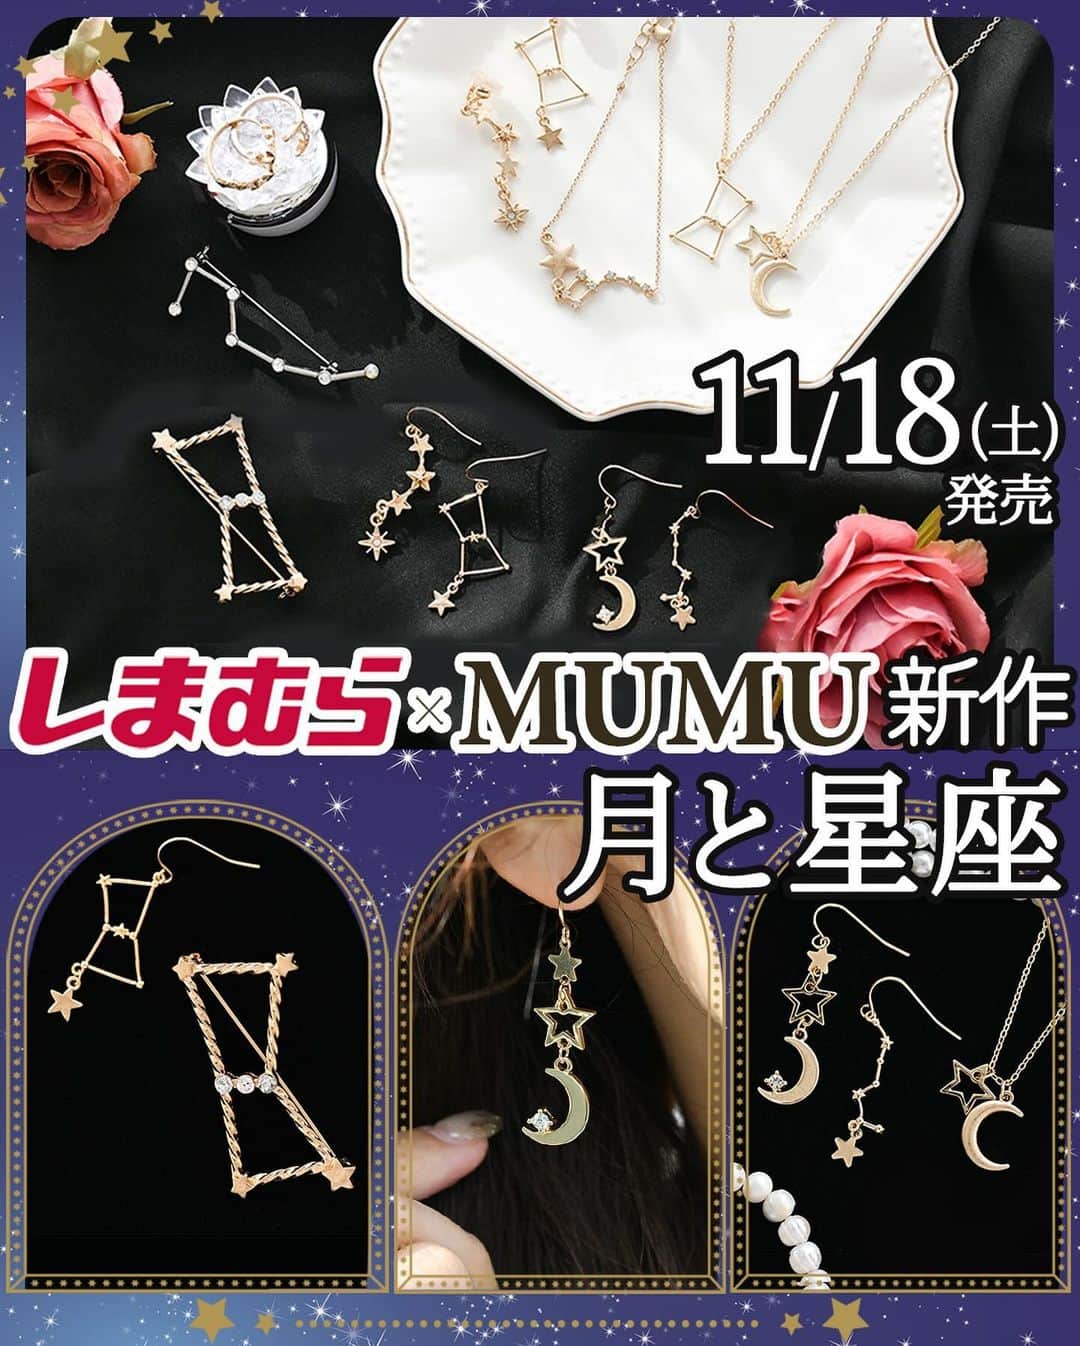 MUMUさんのインスタグラム写真 - (MUMUInstagram)「🌜 11月18日（土）に #しまむら @grshimamura ×MUMUコラボの新作が大量に発売✨ まずはアクセサリーのご紹介。  今月のテーマは「月と星座」。 冬の夜空に瞬く星々を身につけて、ちょっと特別な気分に浸れる新作が登場します🌟  より詳しい内容は是非ブログをご覧いただけたら嬉しいです🙇‍♀️ 文字数制限の都合上、全て記載できなかったためコメント欄へ続きます📝  ＜販売店について＞ —— しまむら全店舗：11月18日（土）～ しまむらオンラインストア：11月18日（土）17時～ https://www.shop-shimamura.com/?b=shimamura ただし、◆マークは「しまむらオンラインストア限定販売（店頭販売なし）」です。 ——  ■オリオン座イヤーアクセサリー 税込539円 【品番】 イヤリング：329-3138 / ◆ピアス：329-3333 【サイズ】 《オリオン座》高さ約4.5cm×横幅約2.3cm 《流れ星》高さ約4.0cm×横幅約1.8cm　※ピアスは高さ約4.4cm×横幅約1.8cm  オリオン座と流れ星、左右で異なるデザインのイヤーアクセサリー。 オリオン座モチーフには星を散りばめ、存在感たっぷりに。 流れ星モチーフには異なる形状の星を連結し、デザイン性の高い一点に。 さらに先端にはクリアストーンをプラス。 動く度に揺れてキラキラと輝きます。 どちらも華奢なモチーフに仕上げ、カジュアルにもキレイめにも取り入れやすく。 イヤリングは痛くなりにくいシリコンカバー付き、 ピアスは手軽につけられるフックタイプ。 左右でモチーフが異なる、ちょっと贅沢なアイテムです✨ ※ピアスはオンラインストア限定  ■北斗七星イヤーアクセサリー 税込539円 【品番】 イヤリング：329-3341 / ◆ピアス：329-3420 【サイズ】 《北斗七星》高さ約4.5cm×横幅約1.0cm 《星・月》高さ約4.8cm×横幅約1.1cm  北斗七星モチーフと月と星モチーフ、左右で異なるデザインのイヤーアクセサリー。 北斗七星モチーフは主張しすぎず、大人の耳元を華やかに演出してくれるサイズに調節。 北斗七星の先端にはさらに星パーツをプラス。 眺めているだけで癒される一点に。 月と星モチーフは大小異なる星２つと三日月を連結。 星は2種類のパーツを使い、抜け感を。 三日月には一粒のビジューをあしらい大人ロマンティックな印象に。 イヤリングはシリコンカバー付きで痛くなりにくく。 ピアスは手軽につけられるフックタイプです。 ※ピアスはオンラインストア限定  オリオン座と北斗七星イヤーアクセサリー、両方を購入すれば6通りの組み合わせが楽しめます♪  ■オリオン座ネックレス 税込539円 【品番】329-3422 【サイズ】チェーンの長さ：約62cm、アジャスターの長さ：約5cm  こんなネックレス見たことない！ オリオン座モチーフのネックレスも発売＊ 繊細なメタルで仕上げたオリオン座モチーフはデコルテを上品な印象に。 小さな星を散りばめ、小ぶりのモチーフながらパッと目を惹く華やかな一点に。 繊細なチェーンでフェミニンコーデにも好相性。 約62cmと長めの設計だから、タートルネックやハイネックのお洋服とも合わせやすい◎ アジャスター付きで長さ調整も可能。 とっても軽い着け心地でストレスフリー♪ 人とかぶらないネックレスをお探しの方にもイチオシです。  ■月と星ネックレス 税込539円 【品番】329-3426 【サイズ】チェーンの長さ：約39cm、アジャスターの長さ：約5cm  人気のモチーフをひとまとめに！ 月と星モチーフを組み合わせたネックレス。 星モチーフは艶のあるメッキで仕上げ、月モチーフはあえてマットなメッキで仕上げました。 輝きの異なる２種類のメッキを組み合わせることで飽きのこないデザインに。 胸元に収まりの良いサイズ感でどんなお洋服とも合わせやすく。 シーズン問わず様々なコーデに取り入れていただけるアイテムです。  ■ブレスレット・リングセット 税込539円 【品番】329-3433 【サイズ】 ①ブレスレット：長さ約17.5cm ②星リング：約13.5号 ③月と星リング：約12.5号（フリーリング）  ブレスレット1点とリング2点のセット。 ブレスレットは北斗七星モチーフと星を連結し、他にはない新鮮な印象に。 星を表現するため、ビジューを一粒ずつあしらいました。 星リングは流れ星をイメージしたデザイン。 月と星リングはビジューがキラッと輝く三日月とシンプルな星を組み合わせました。 単品使いでもセット使いでも。 大人の手元のアクセントにピッタリなお得なセットです。 . #PR #プチプラコーデ #instagood #プチプラ #ブローチ #instalike #服好きな人と繋がりたい #ootd #fashion #MUMU #流行 #しまむらコーデ #しまパト #星座 #grshimamura #しまむら購入品 # #outfit #しまスタ #プチプラファッション #mumuニスタ #mumuコラボ #プチプラアクセサリー #ネックレス」11月13日 21時39分 - mumudesukamumudesuyo